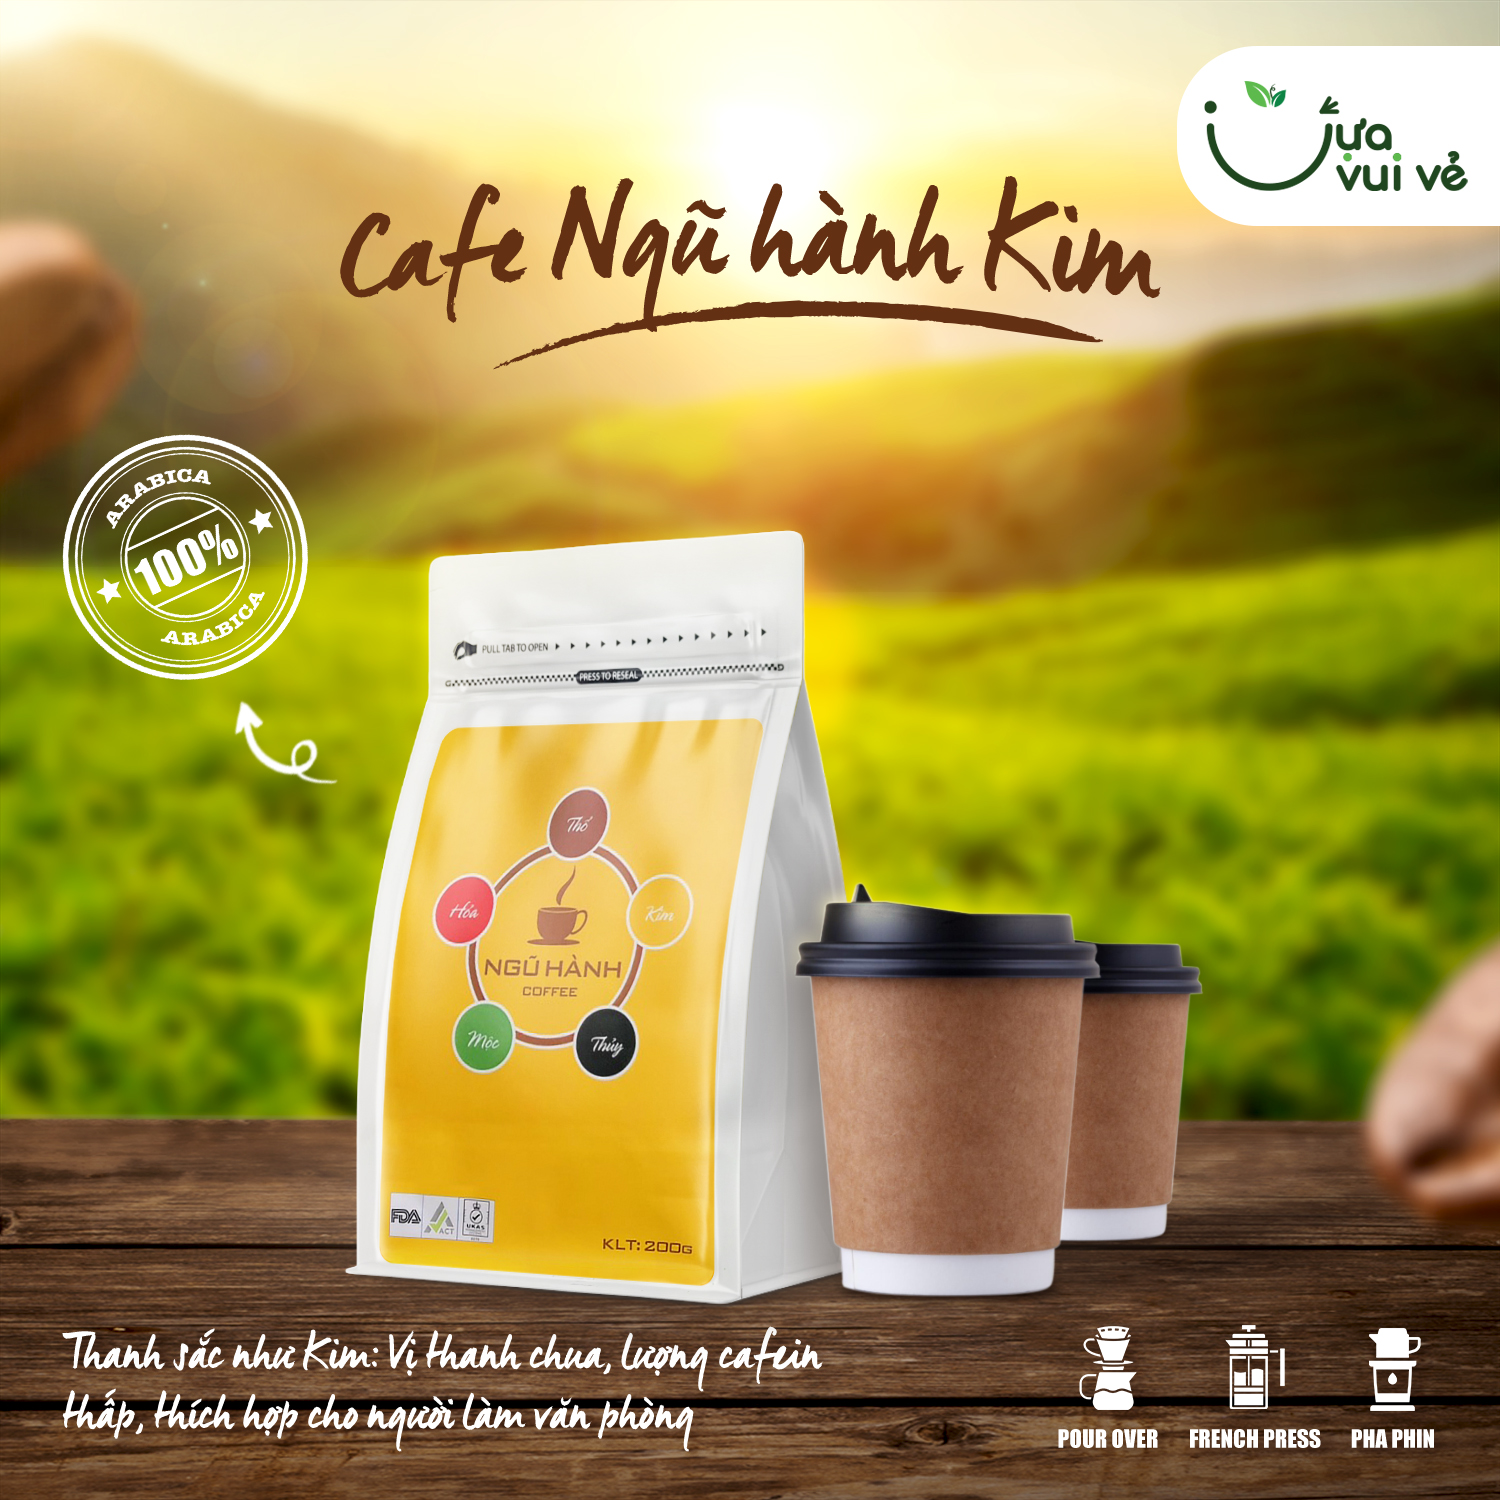 Ngũ Hành Coffee - Arabica Cầu Đất & Khe Sanh, Sơn La